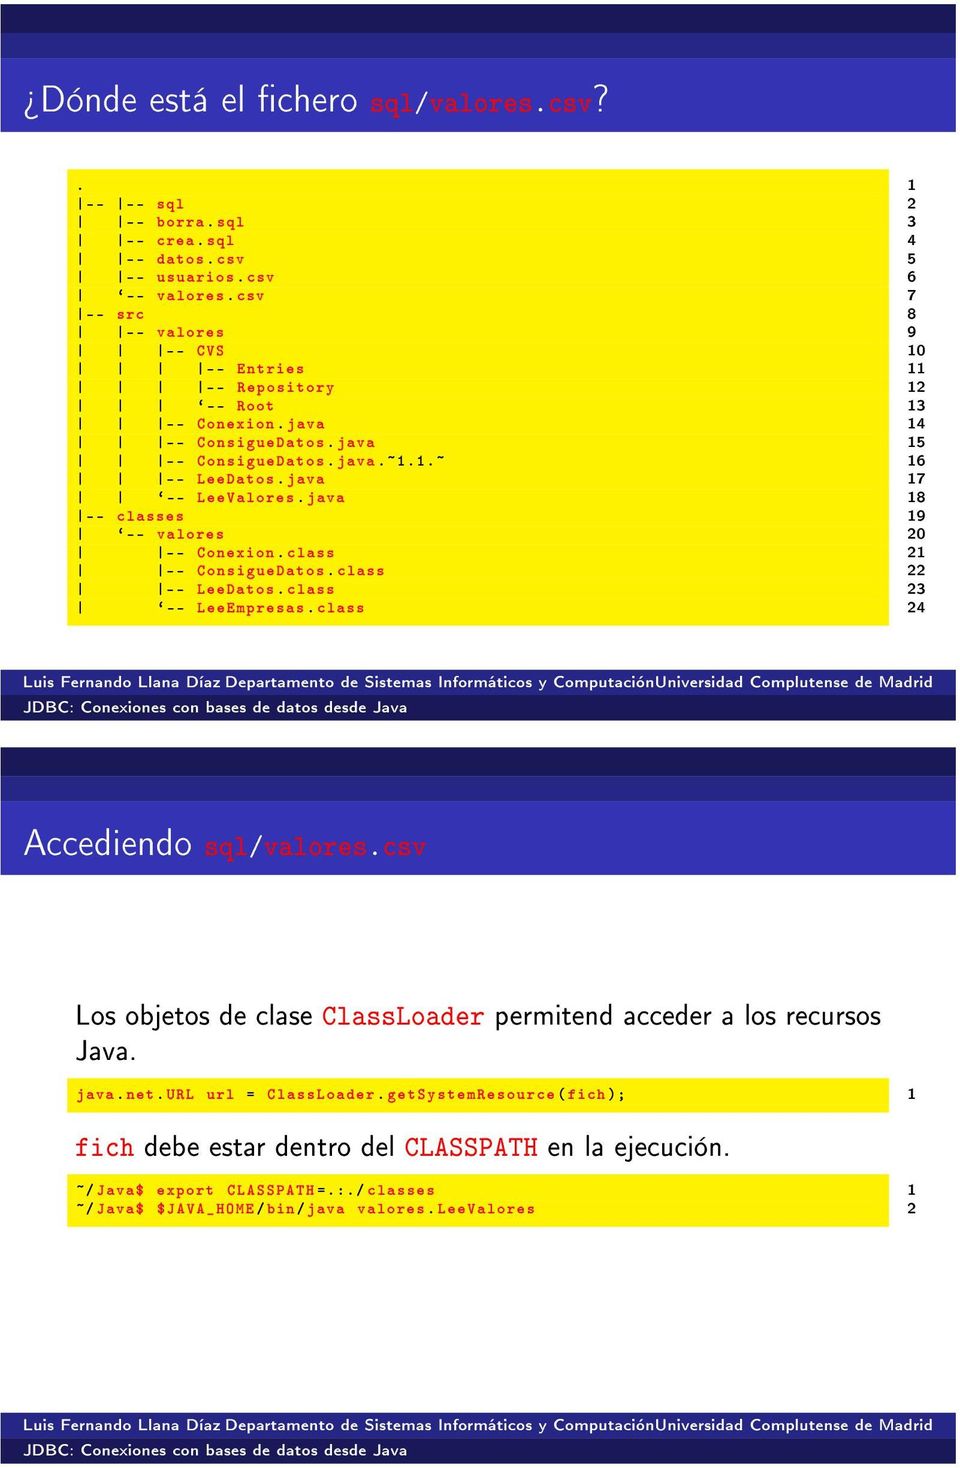 java -- classes `-- valores -- Conexion. class -- ConsigueDatos. class -- LeeDatos. class `-- LeeEmpresas. class 0 0 Accediendo sql/valores.